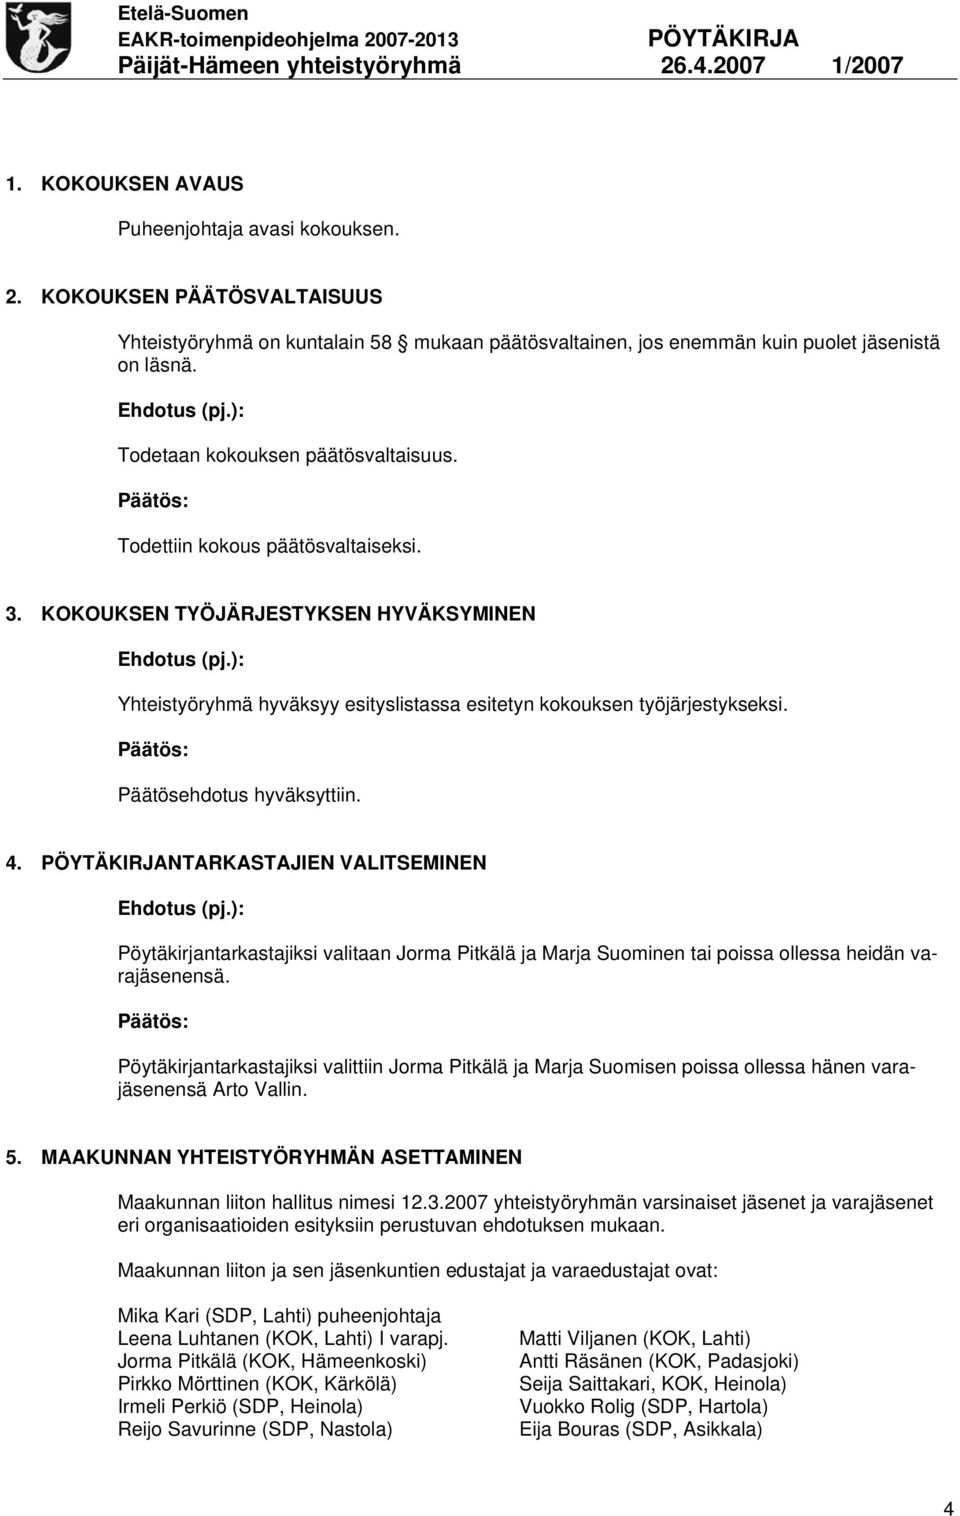 Päätösehdotus hyväksyttiin. 4. NTARKASTAJIEN VALITSEMINEN Pöytäkirjantarkastajiksi valitaan Jorma Pitkälä ja Marja Suominen tai poissa ollessa heidän varajäsenensä.